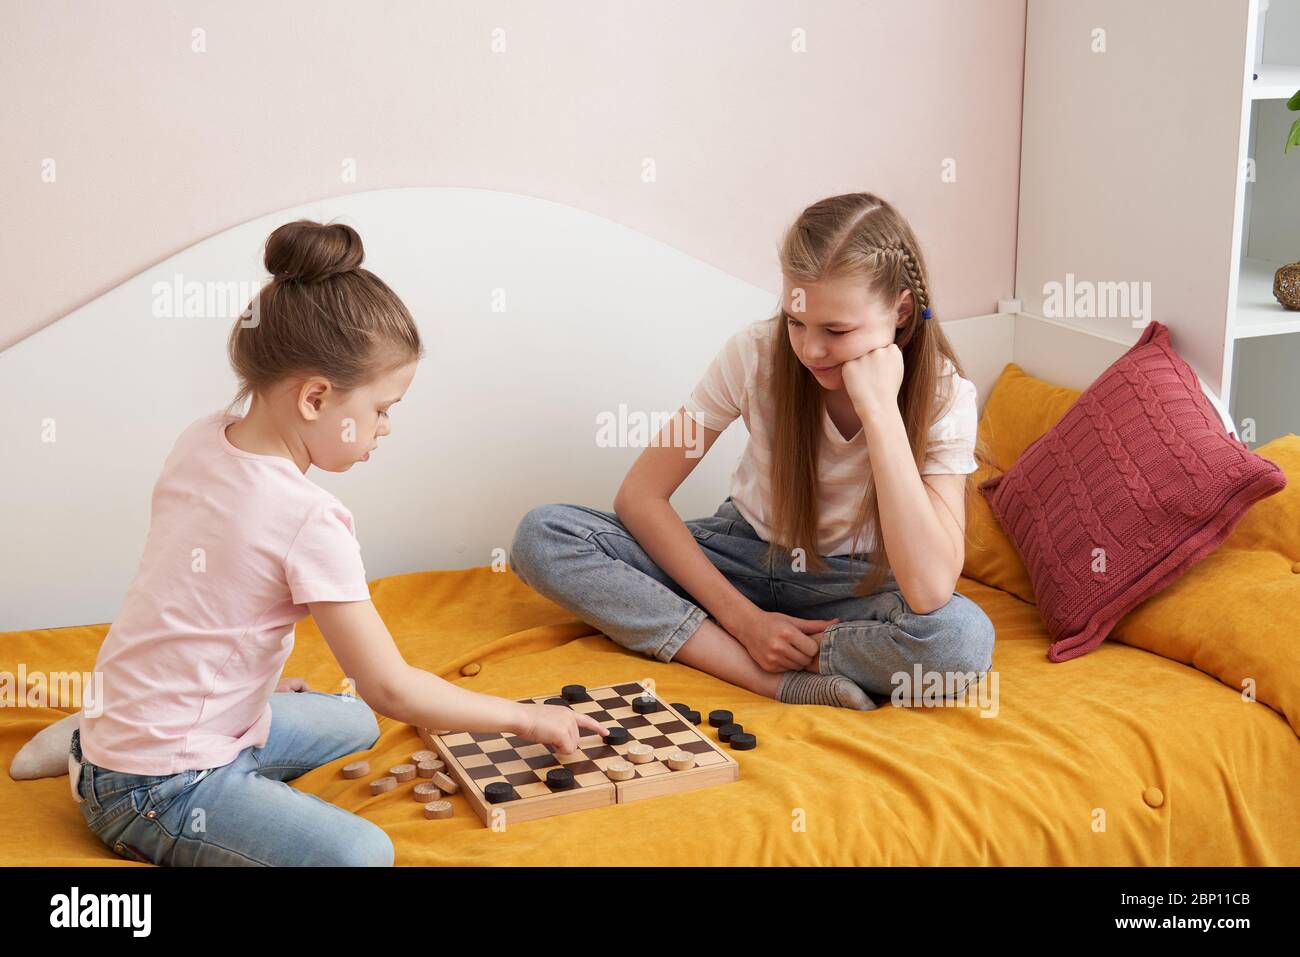 Игра в карты с сестрами. Дети 2 сестры играют на раздевание. Две сестры лежа на полу играют в шашки. Во что можно поиграть с сестренкой. Брат с сестрой играли в игру на раздевание а потом потрахались.